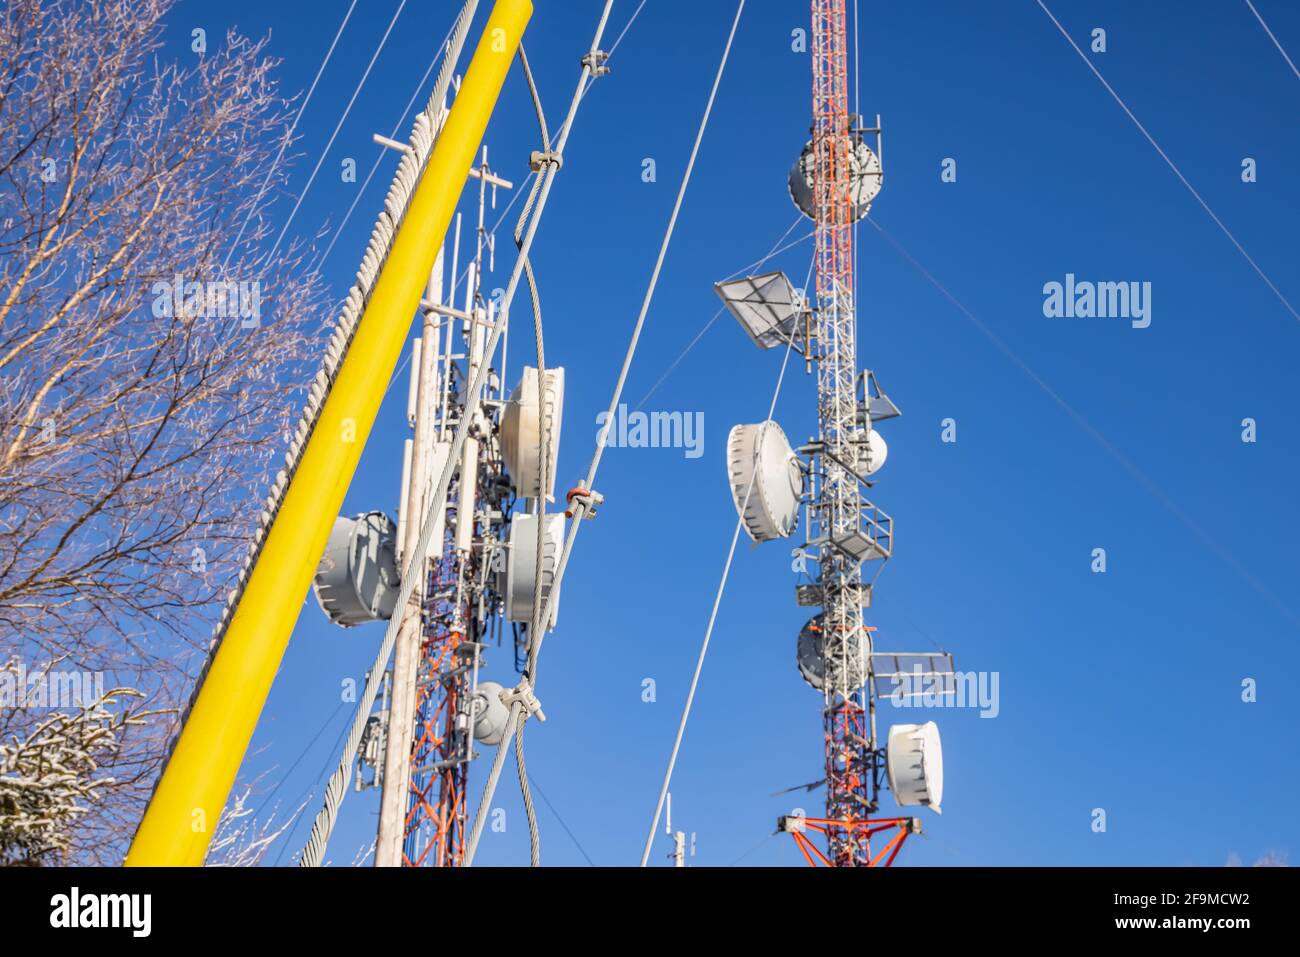 Eine kippbare Aufnahme von zwei Telekommunikationstürmen mit blauem Himmel-Hintergrund, mit denen verschiedene Antennen zur Aufnahme der Funksignale verbunden sind. Stockfoto